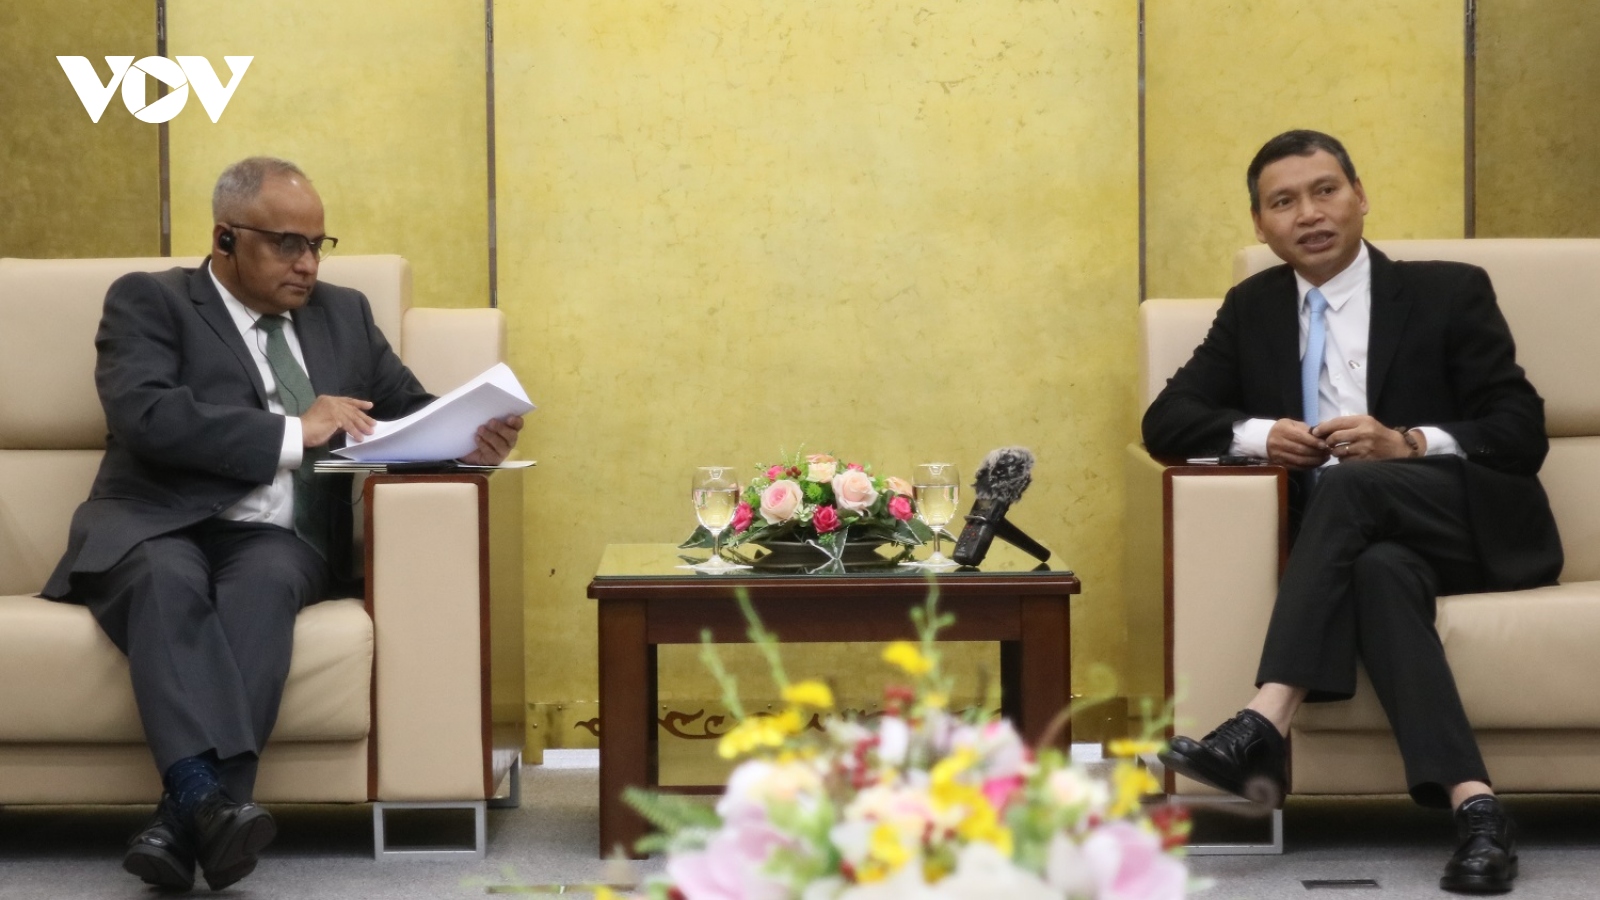 Đà Nẵng mong muốn ADB tiếp tục hợp tác, hỗ trợ trên nhiều lĩnh vực